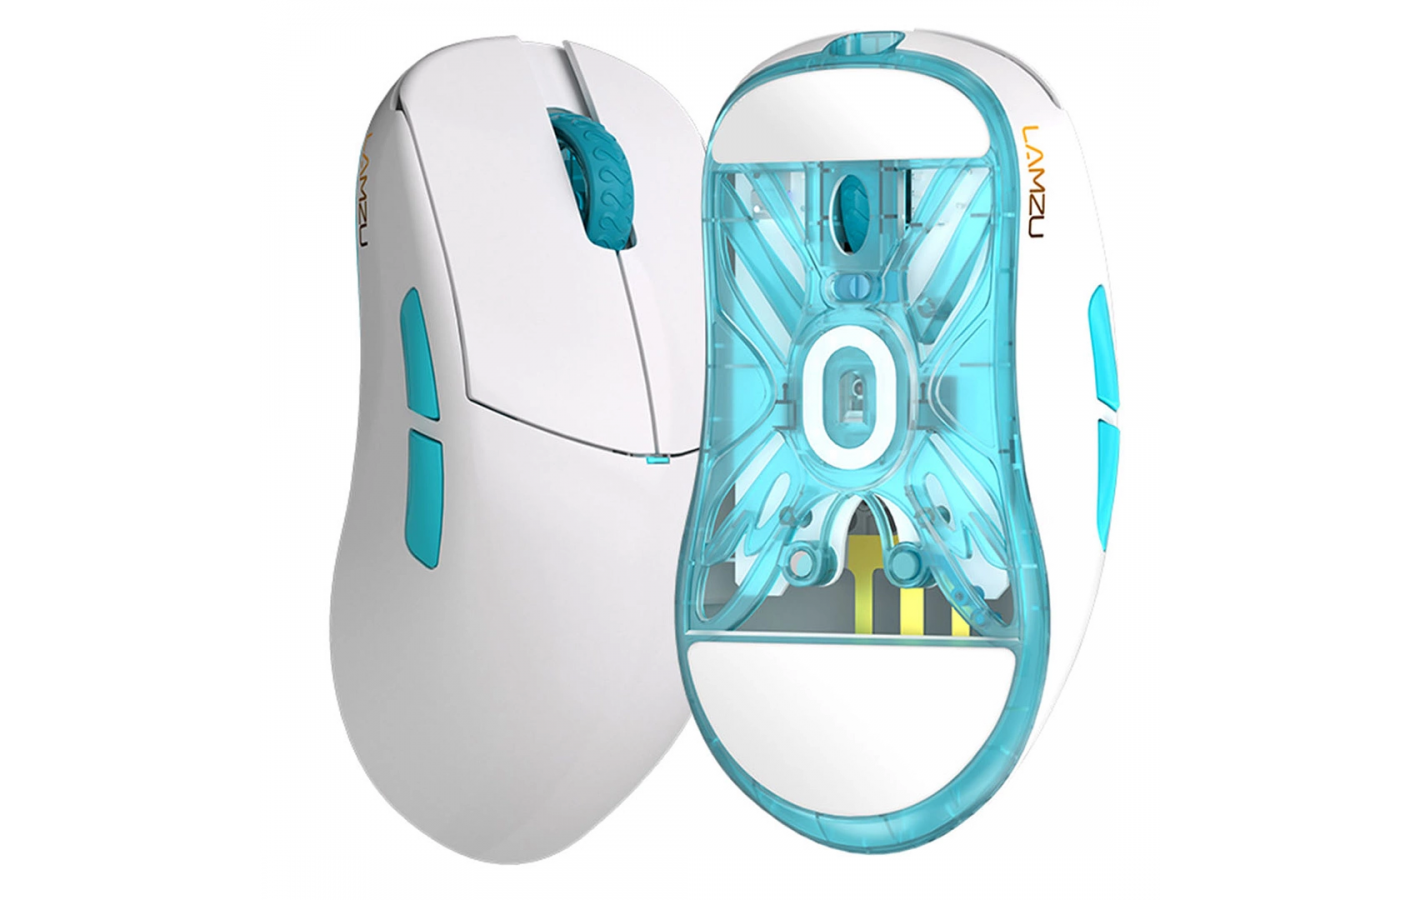 Безпровідна ігрова мишка Lamzu Atlantis OG V2 Pro - Polar White (підтримує 4К) PixArt PAW 3395